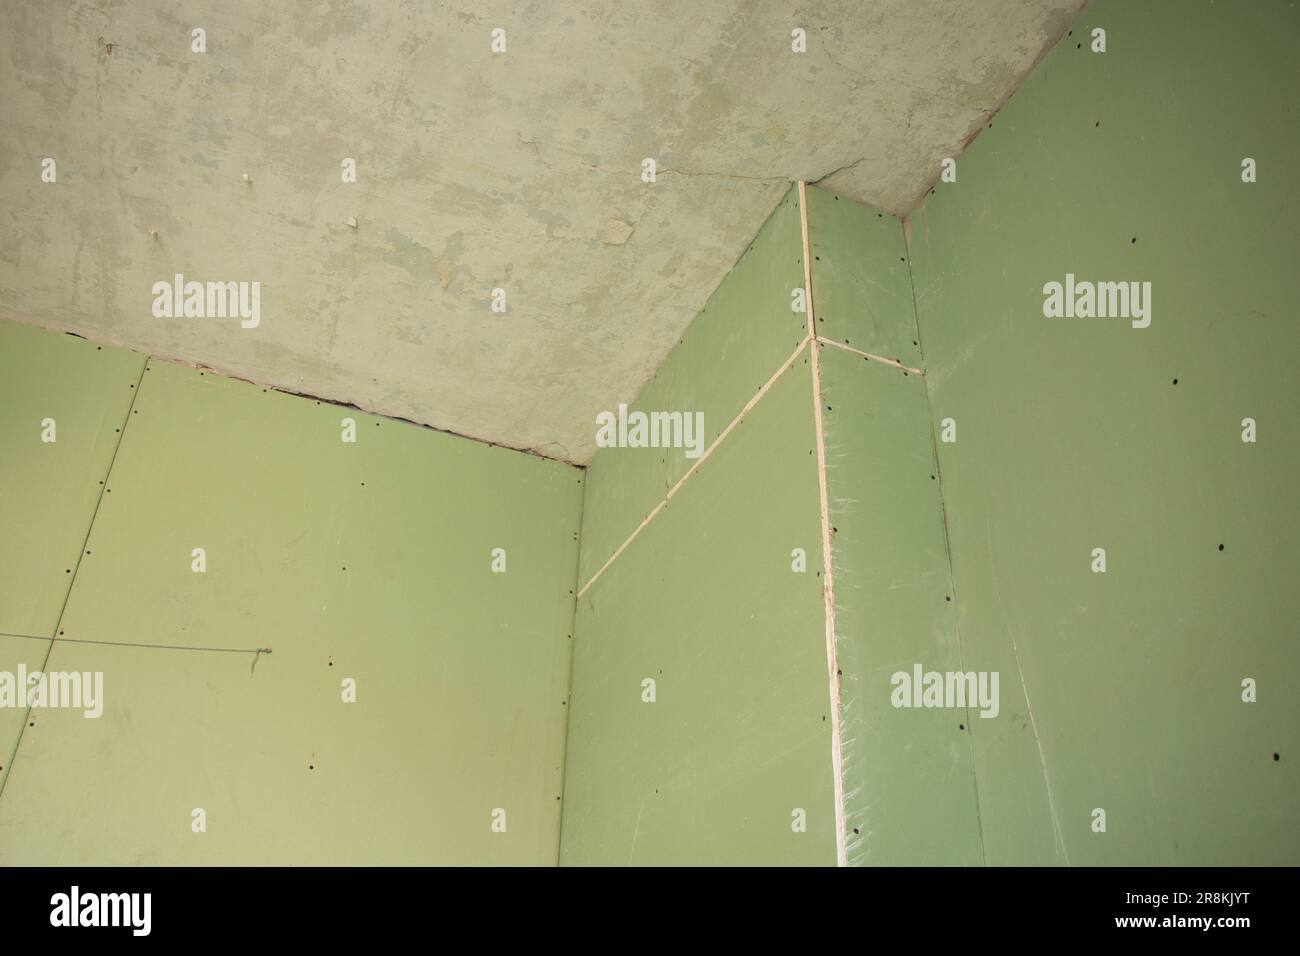 le mur est gainé de plâtrier vert résistant à l'humidité dans l'appartement, travaux de rénovation à la maison Banque D'Images